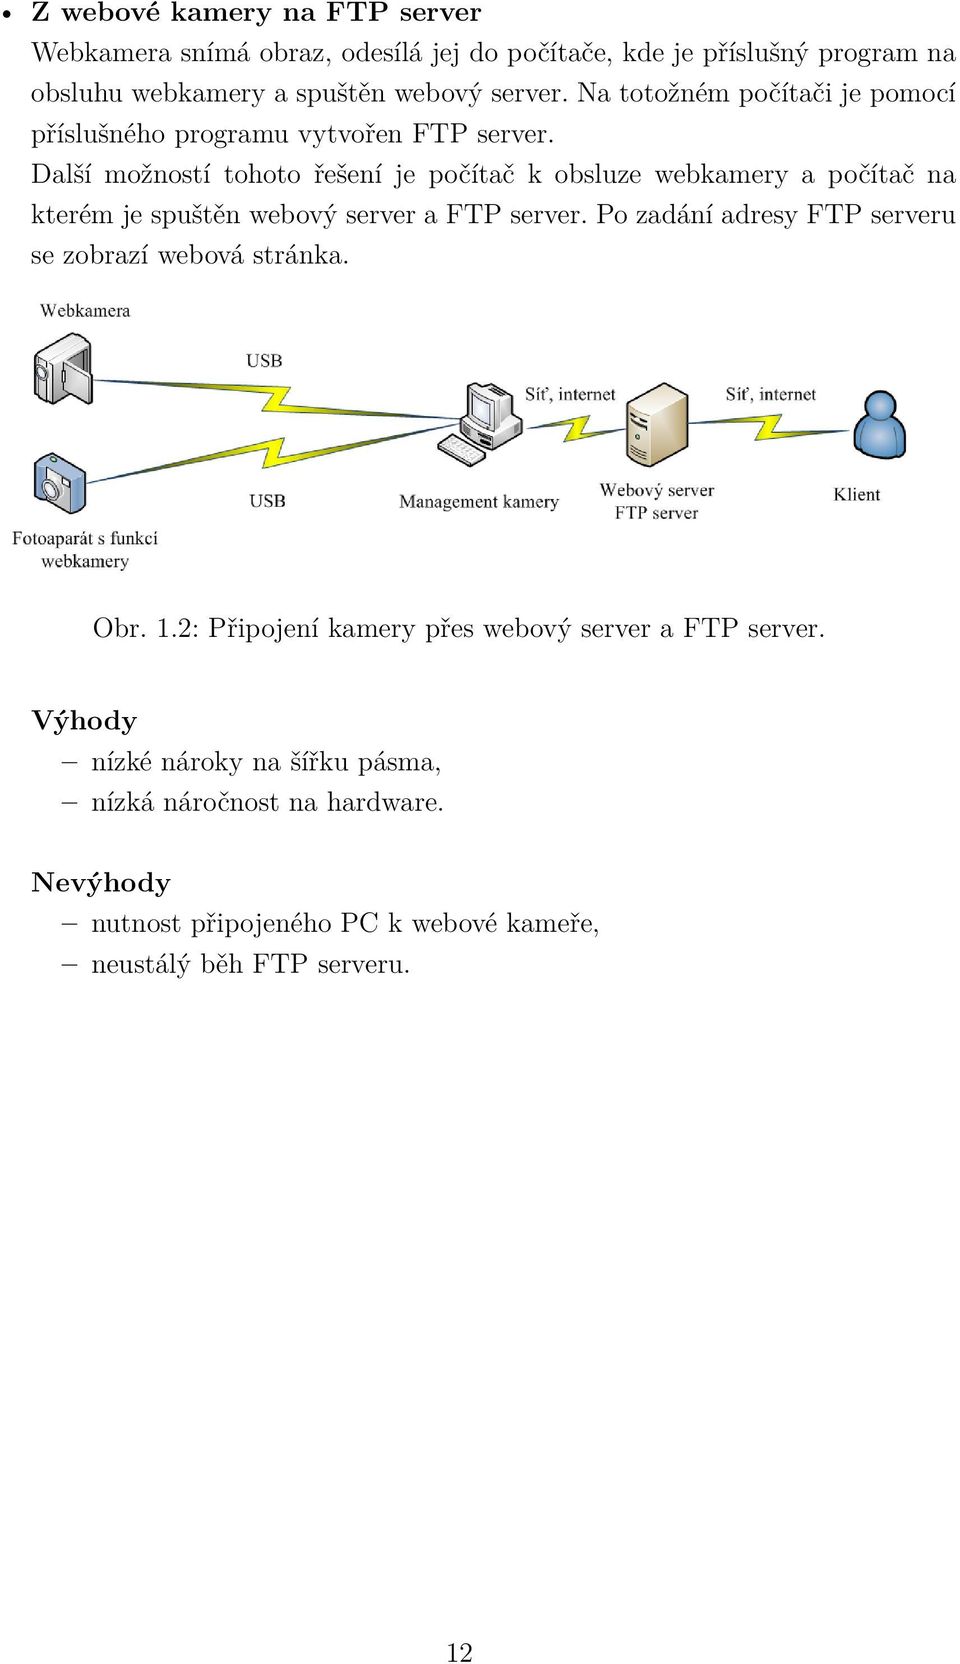 Další možností tohoto řešení je počítač k obsluze webkamery a počítač na kterém je spuštěn webový server a FTP server.